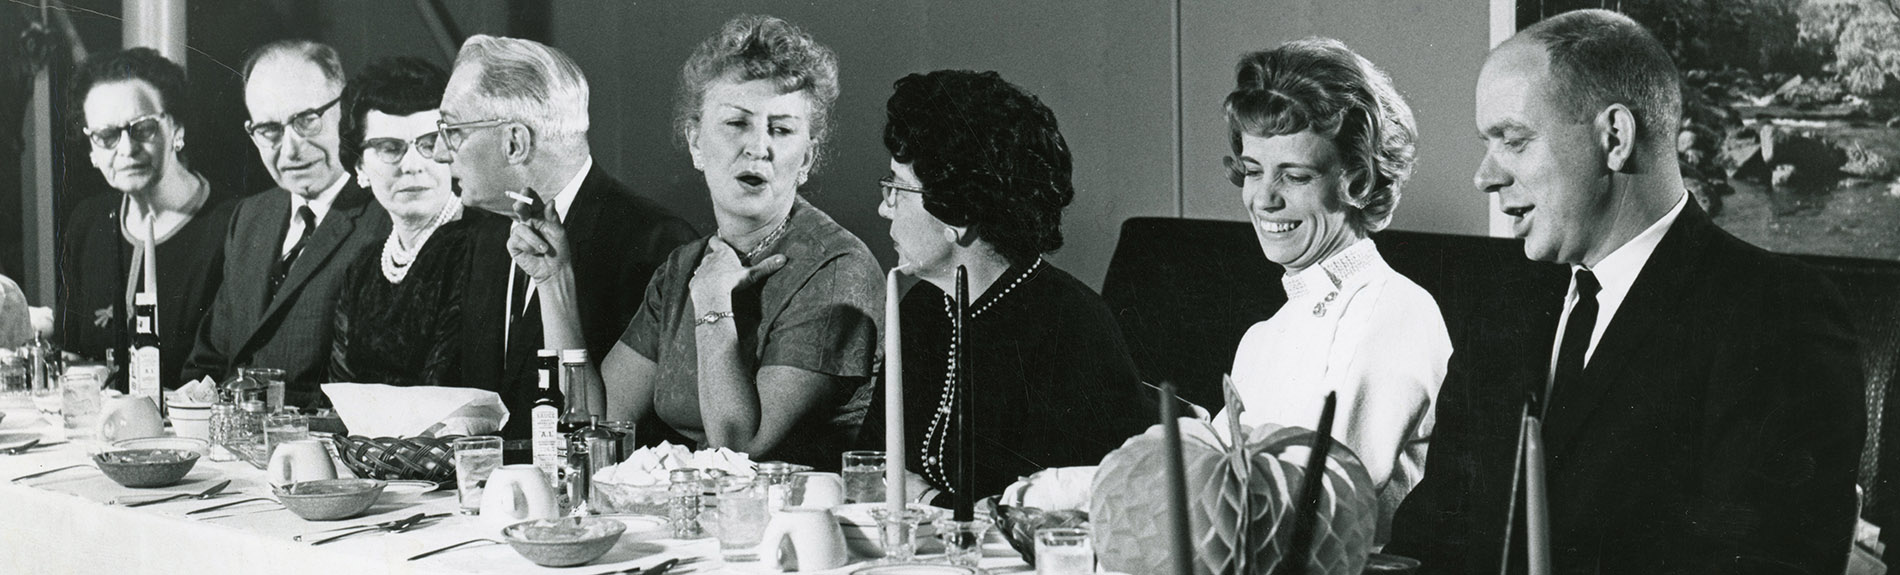 First member appreciation dinner, 1964